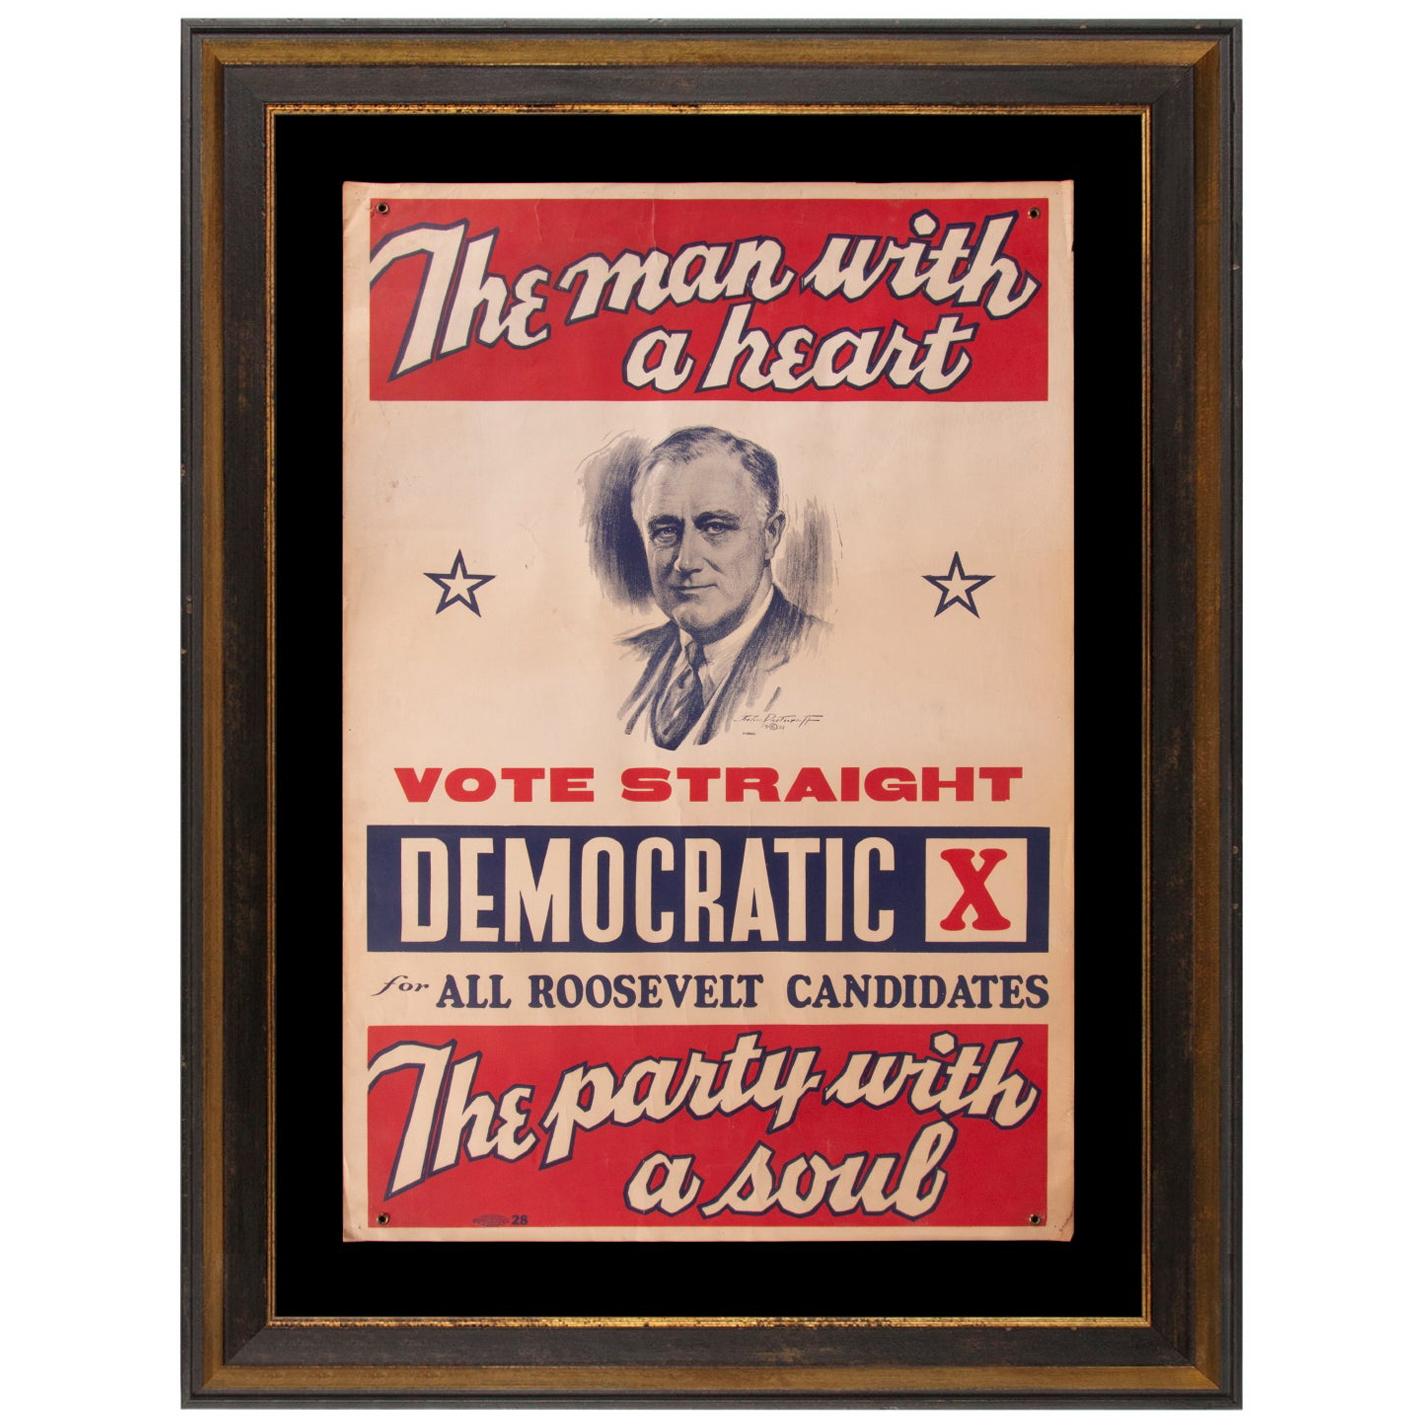 A Gallant Leader Poster Vintage 1936 Franklin D Roosevelt 